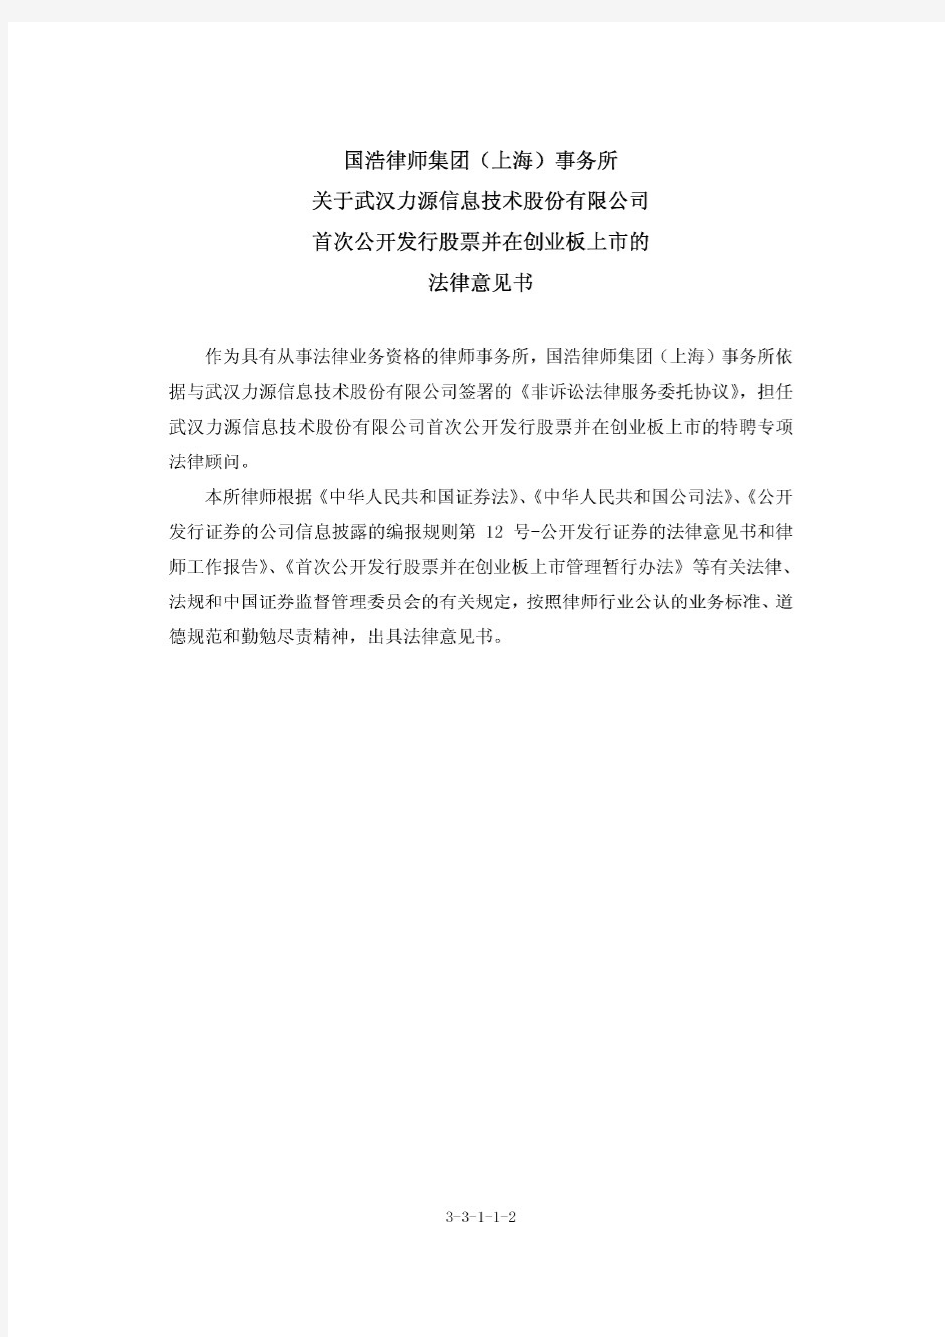 力源信息：国浩律师集团(上海)事务所关于公司首次公开发行股票并在创业板上市的法律意见书 2011-01-26